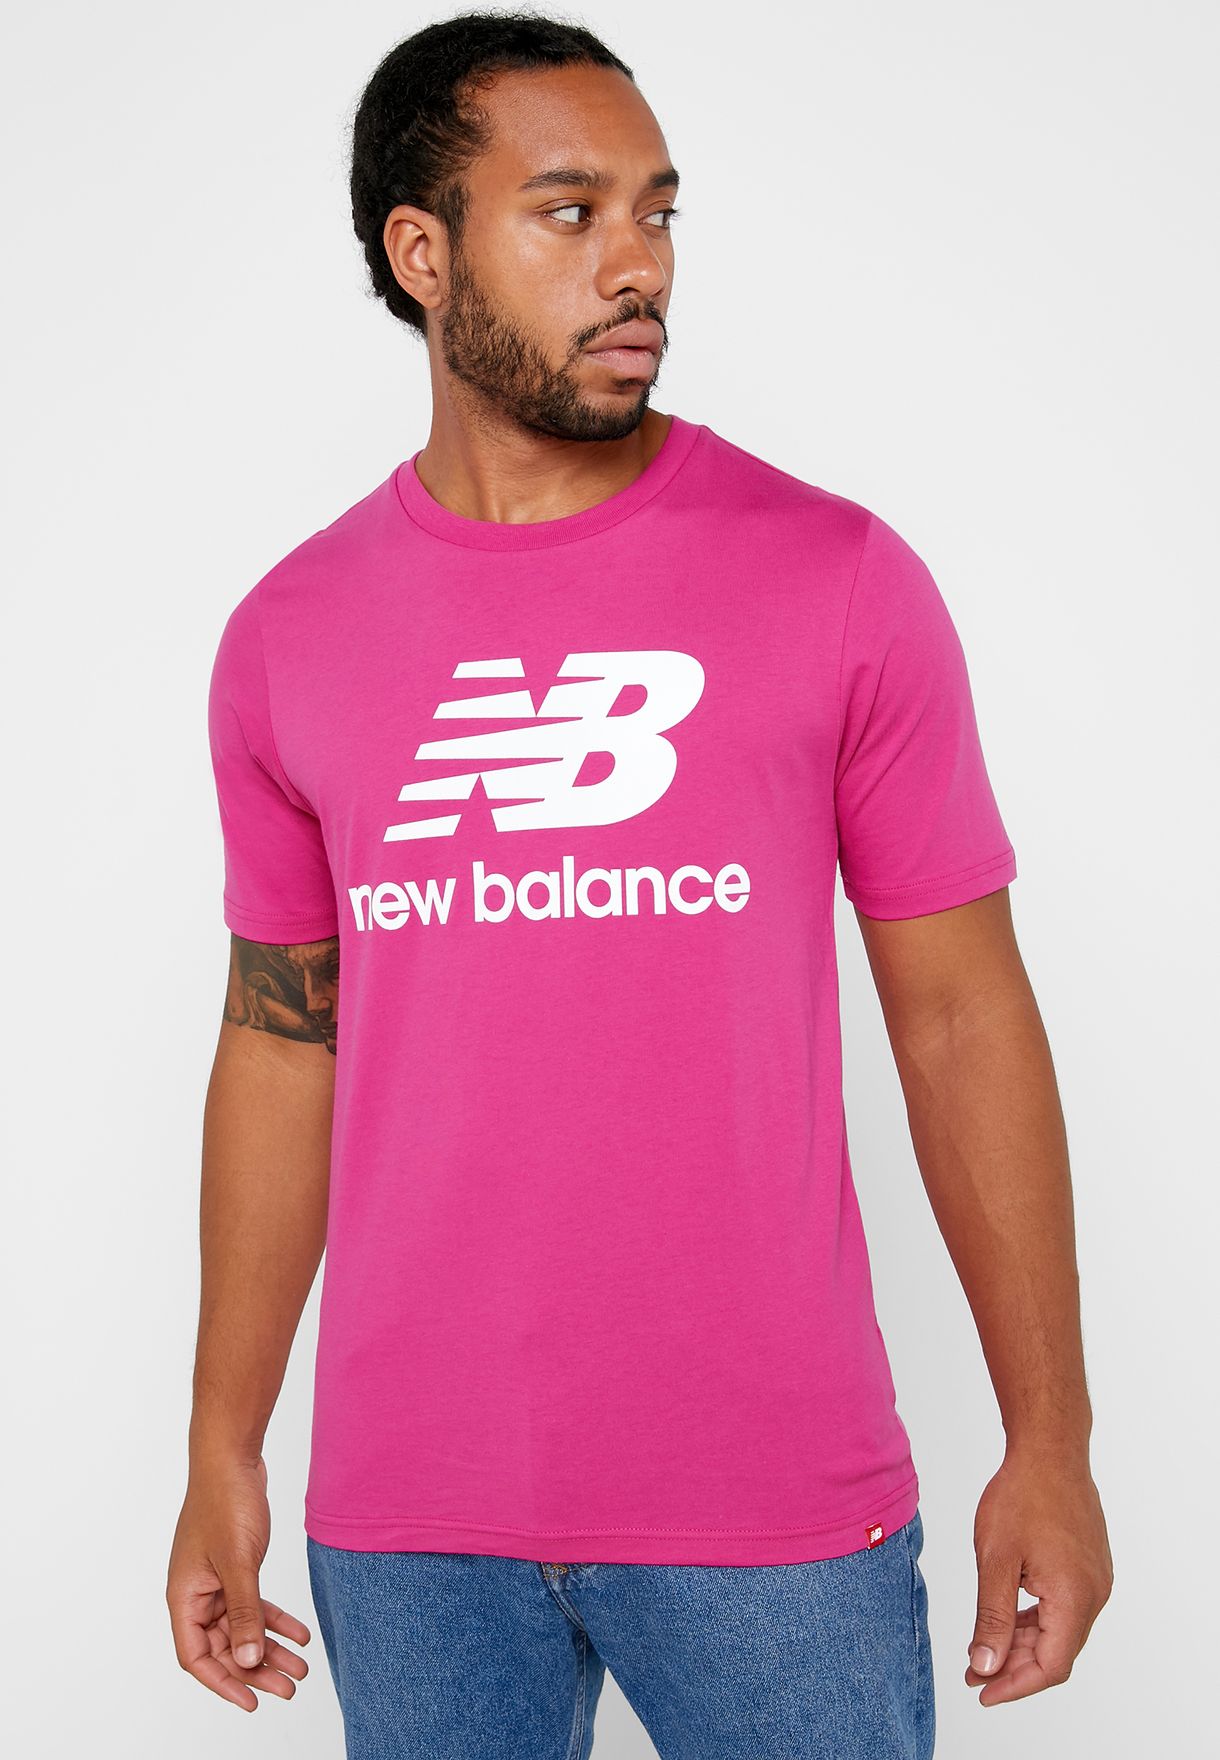 balance shirt